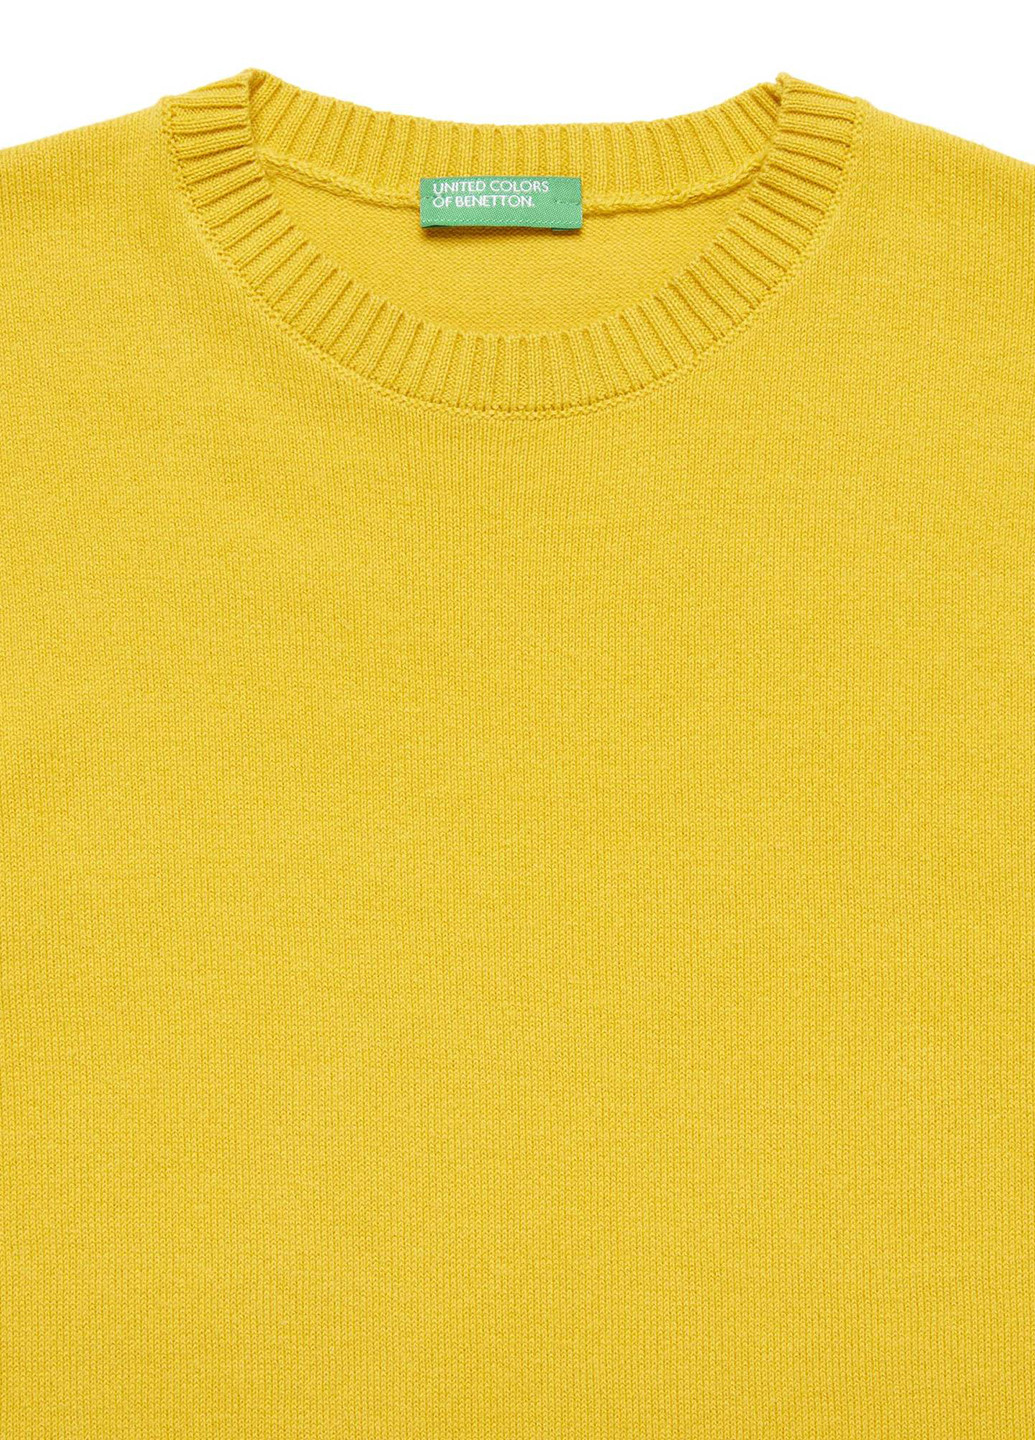 Желтый демисезонный джемпер джемпер United Colors of Benetton